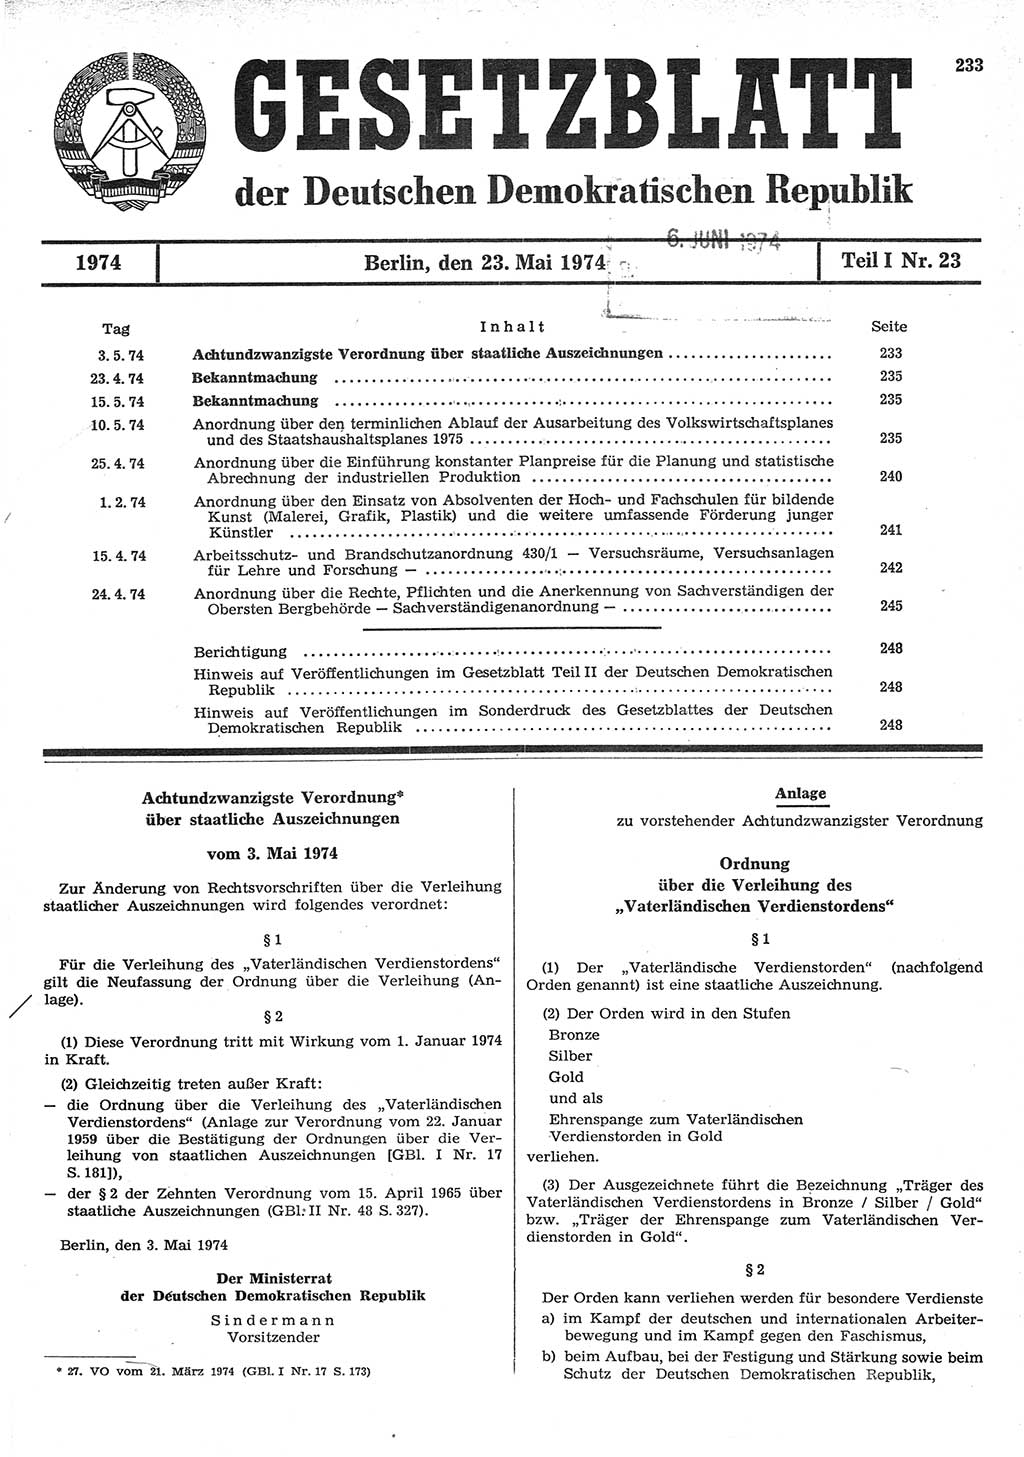 Gesetzblatt (GBl.) der Deutschen Demokratischen Republik (DDR) Teil Ⅰ 1974, Seite 233 (GBl. DDR Ⅰ 1974, S. 233)